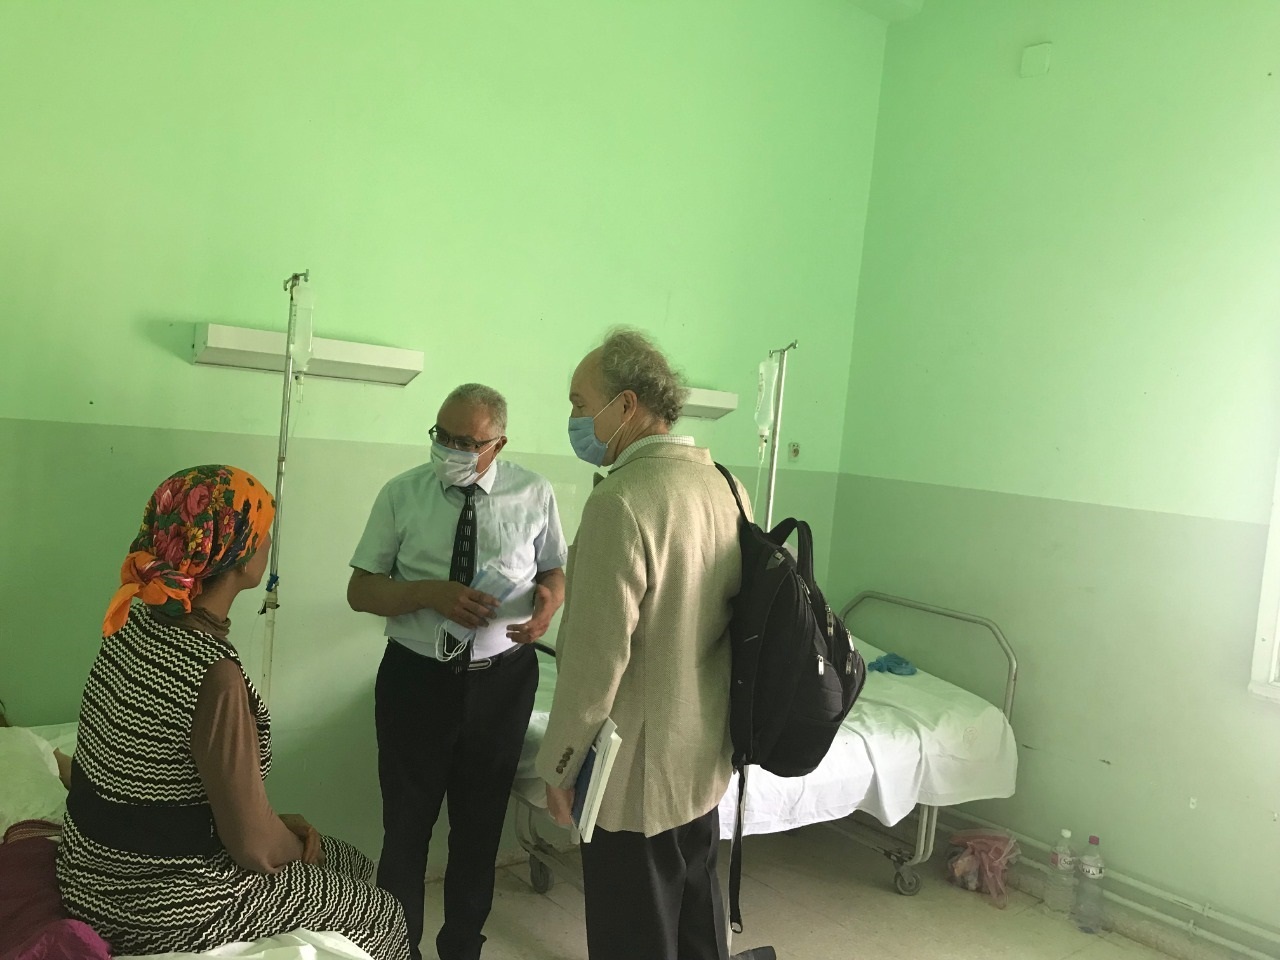 خبراء من منظمة الصحة العالمية ووزارة الصحة التونسية يتحدثون مع أم طفل مصاب بالحصبة(صورة من الدكتورة شيرين النُصيري، منظمة الصحة العالمية)